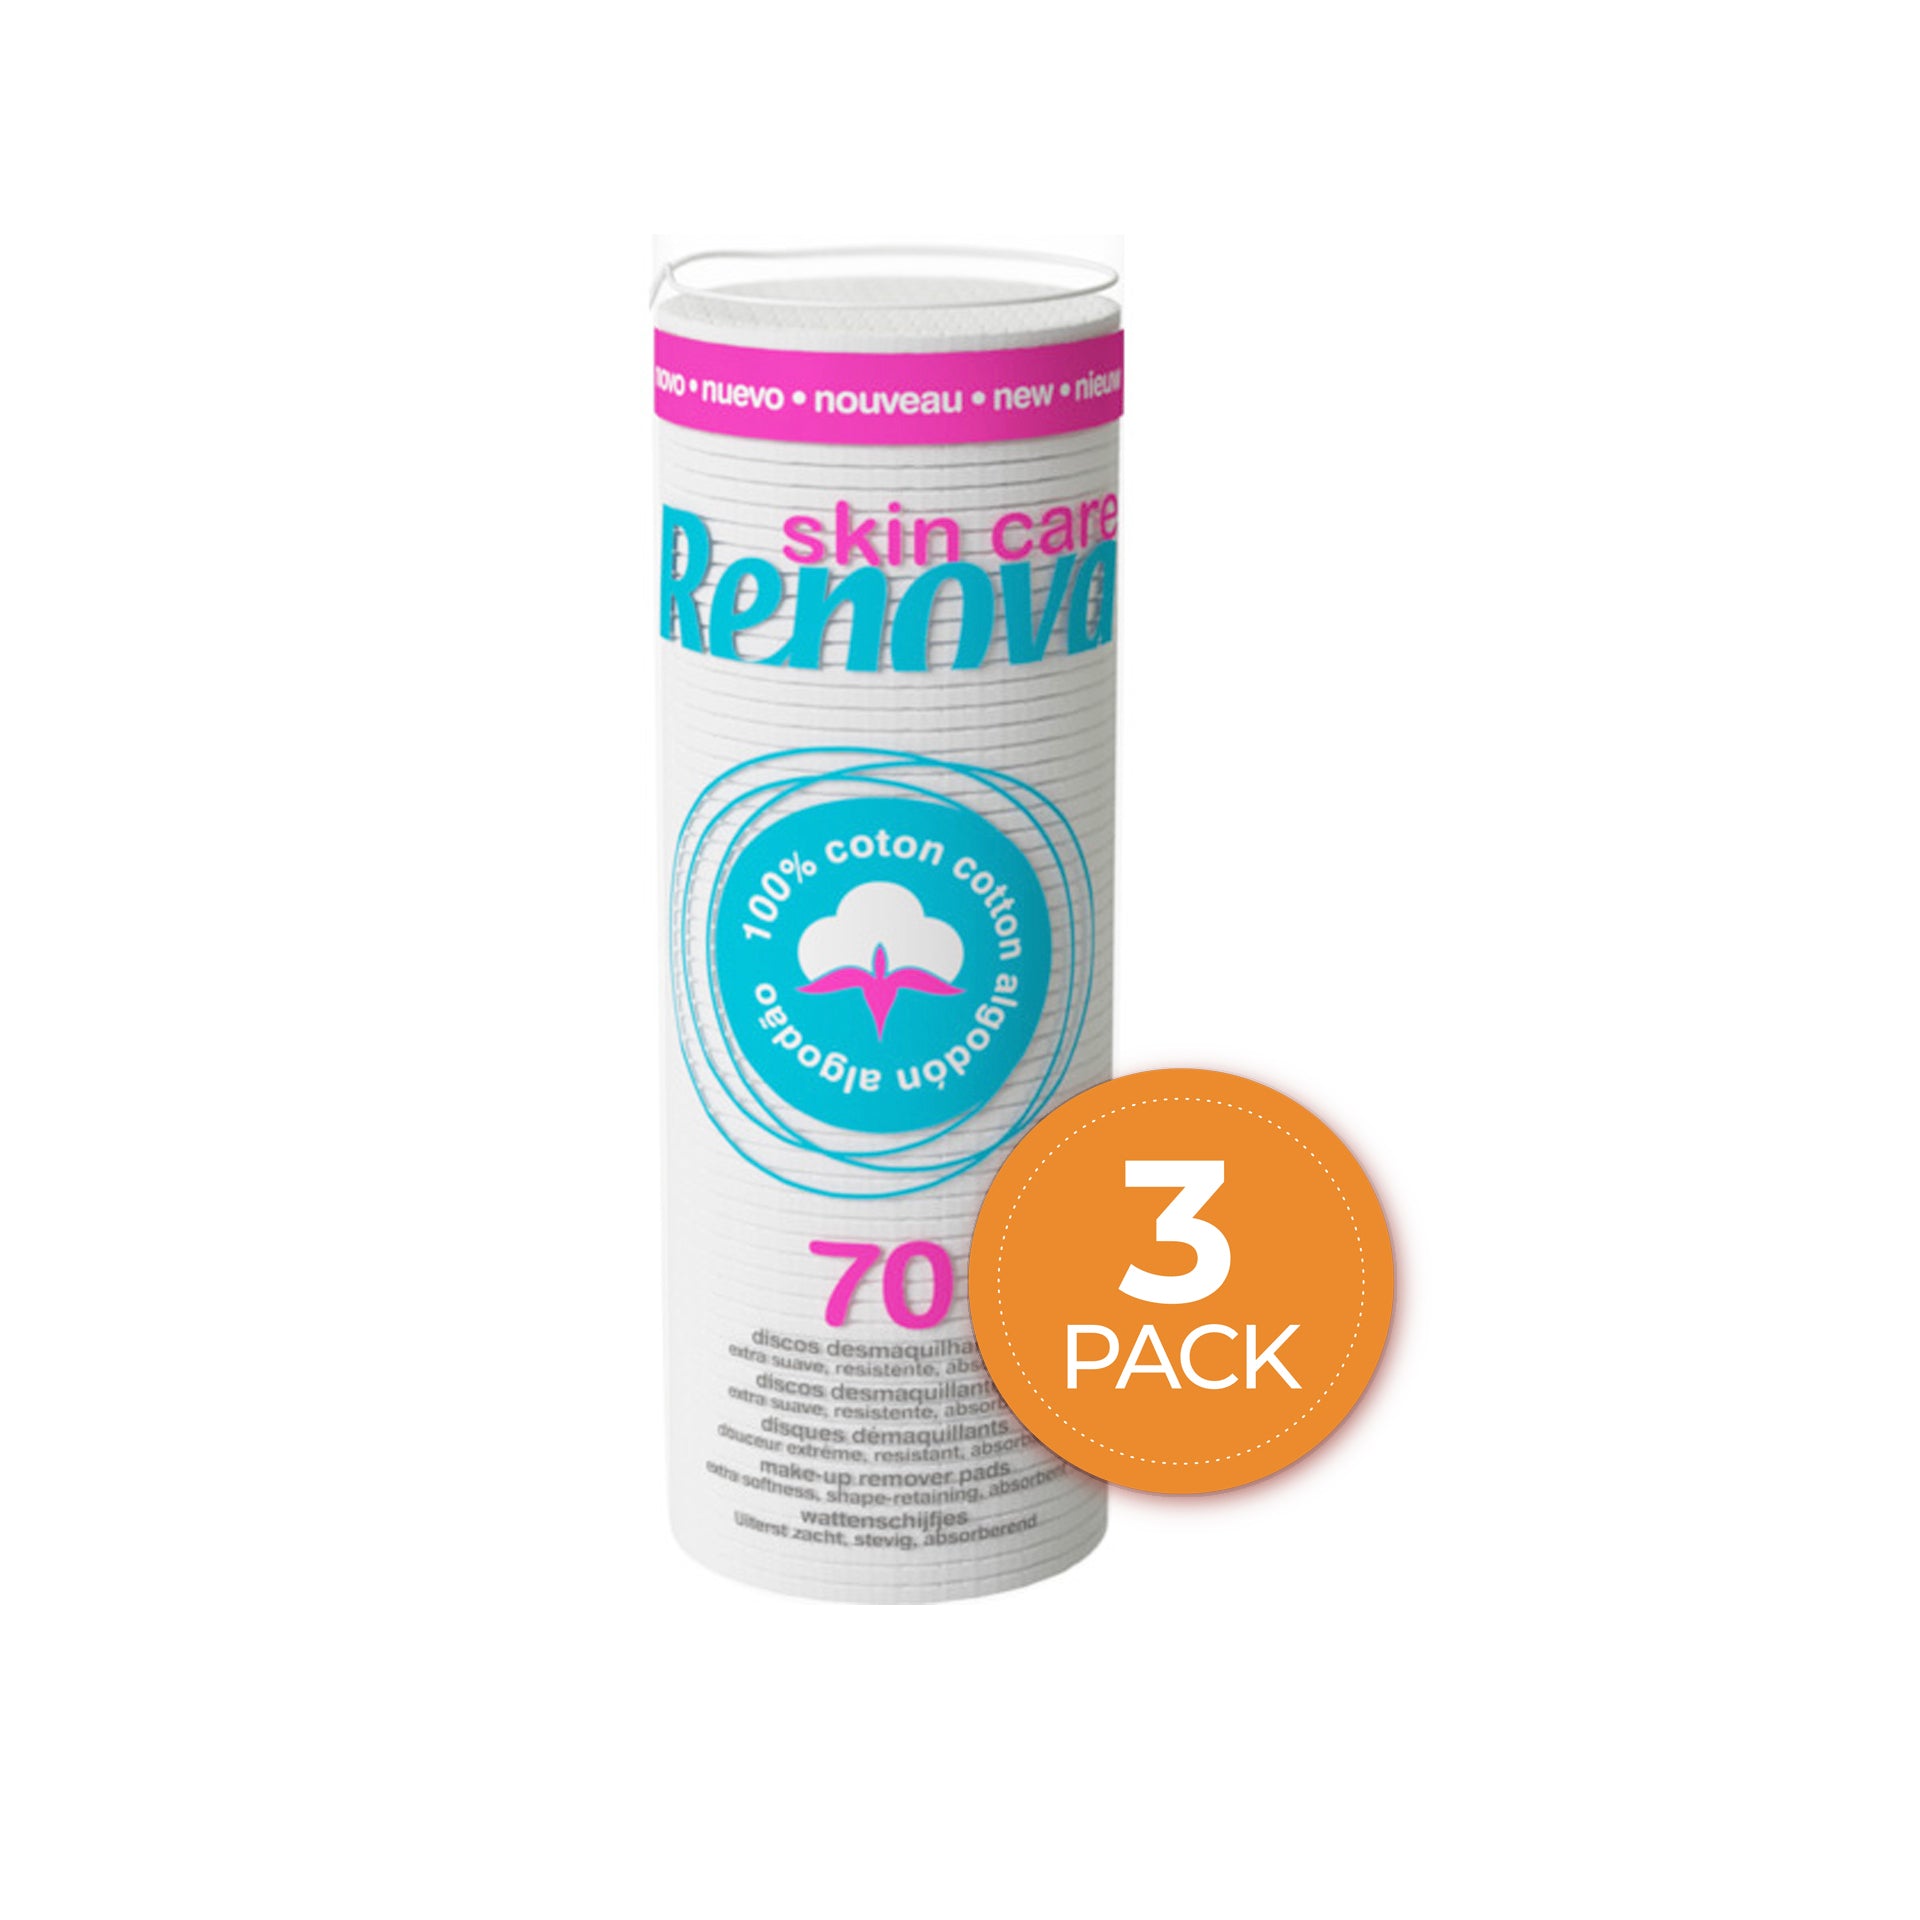 Renova Skin Care Discos Desmaquilhantes Mini 70 un - Pack 3 x 70 un